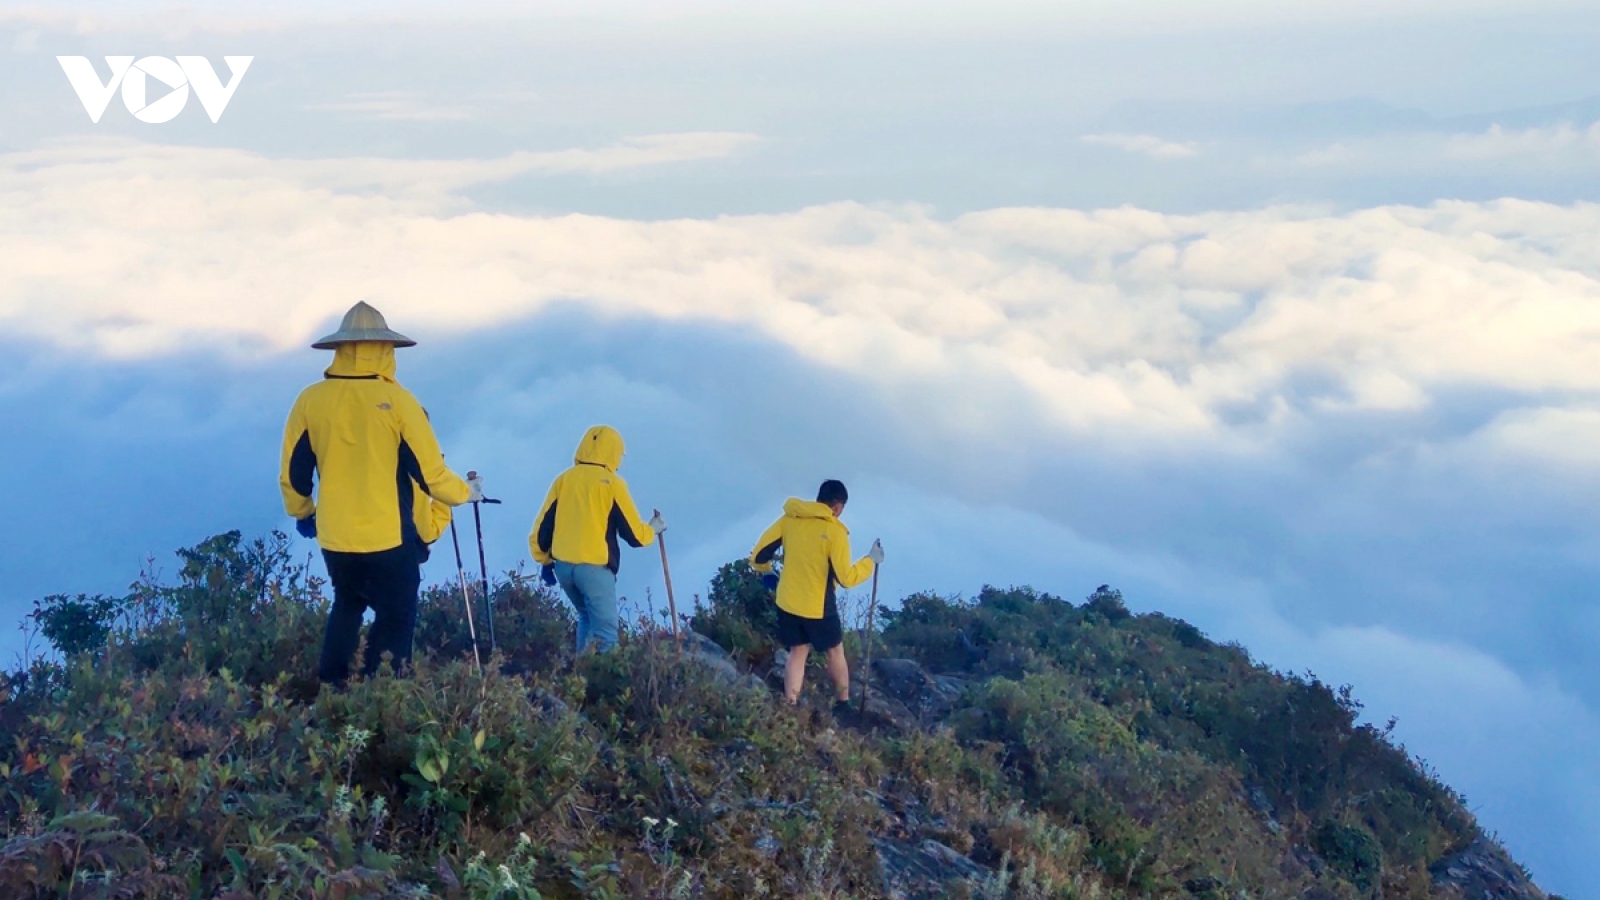 Đẹp ngỡ ngàng những đỉnh núi “3 nhất” ở Lai Châu